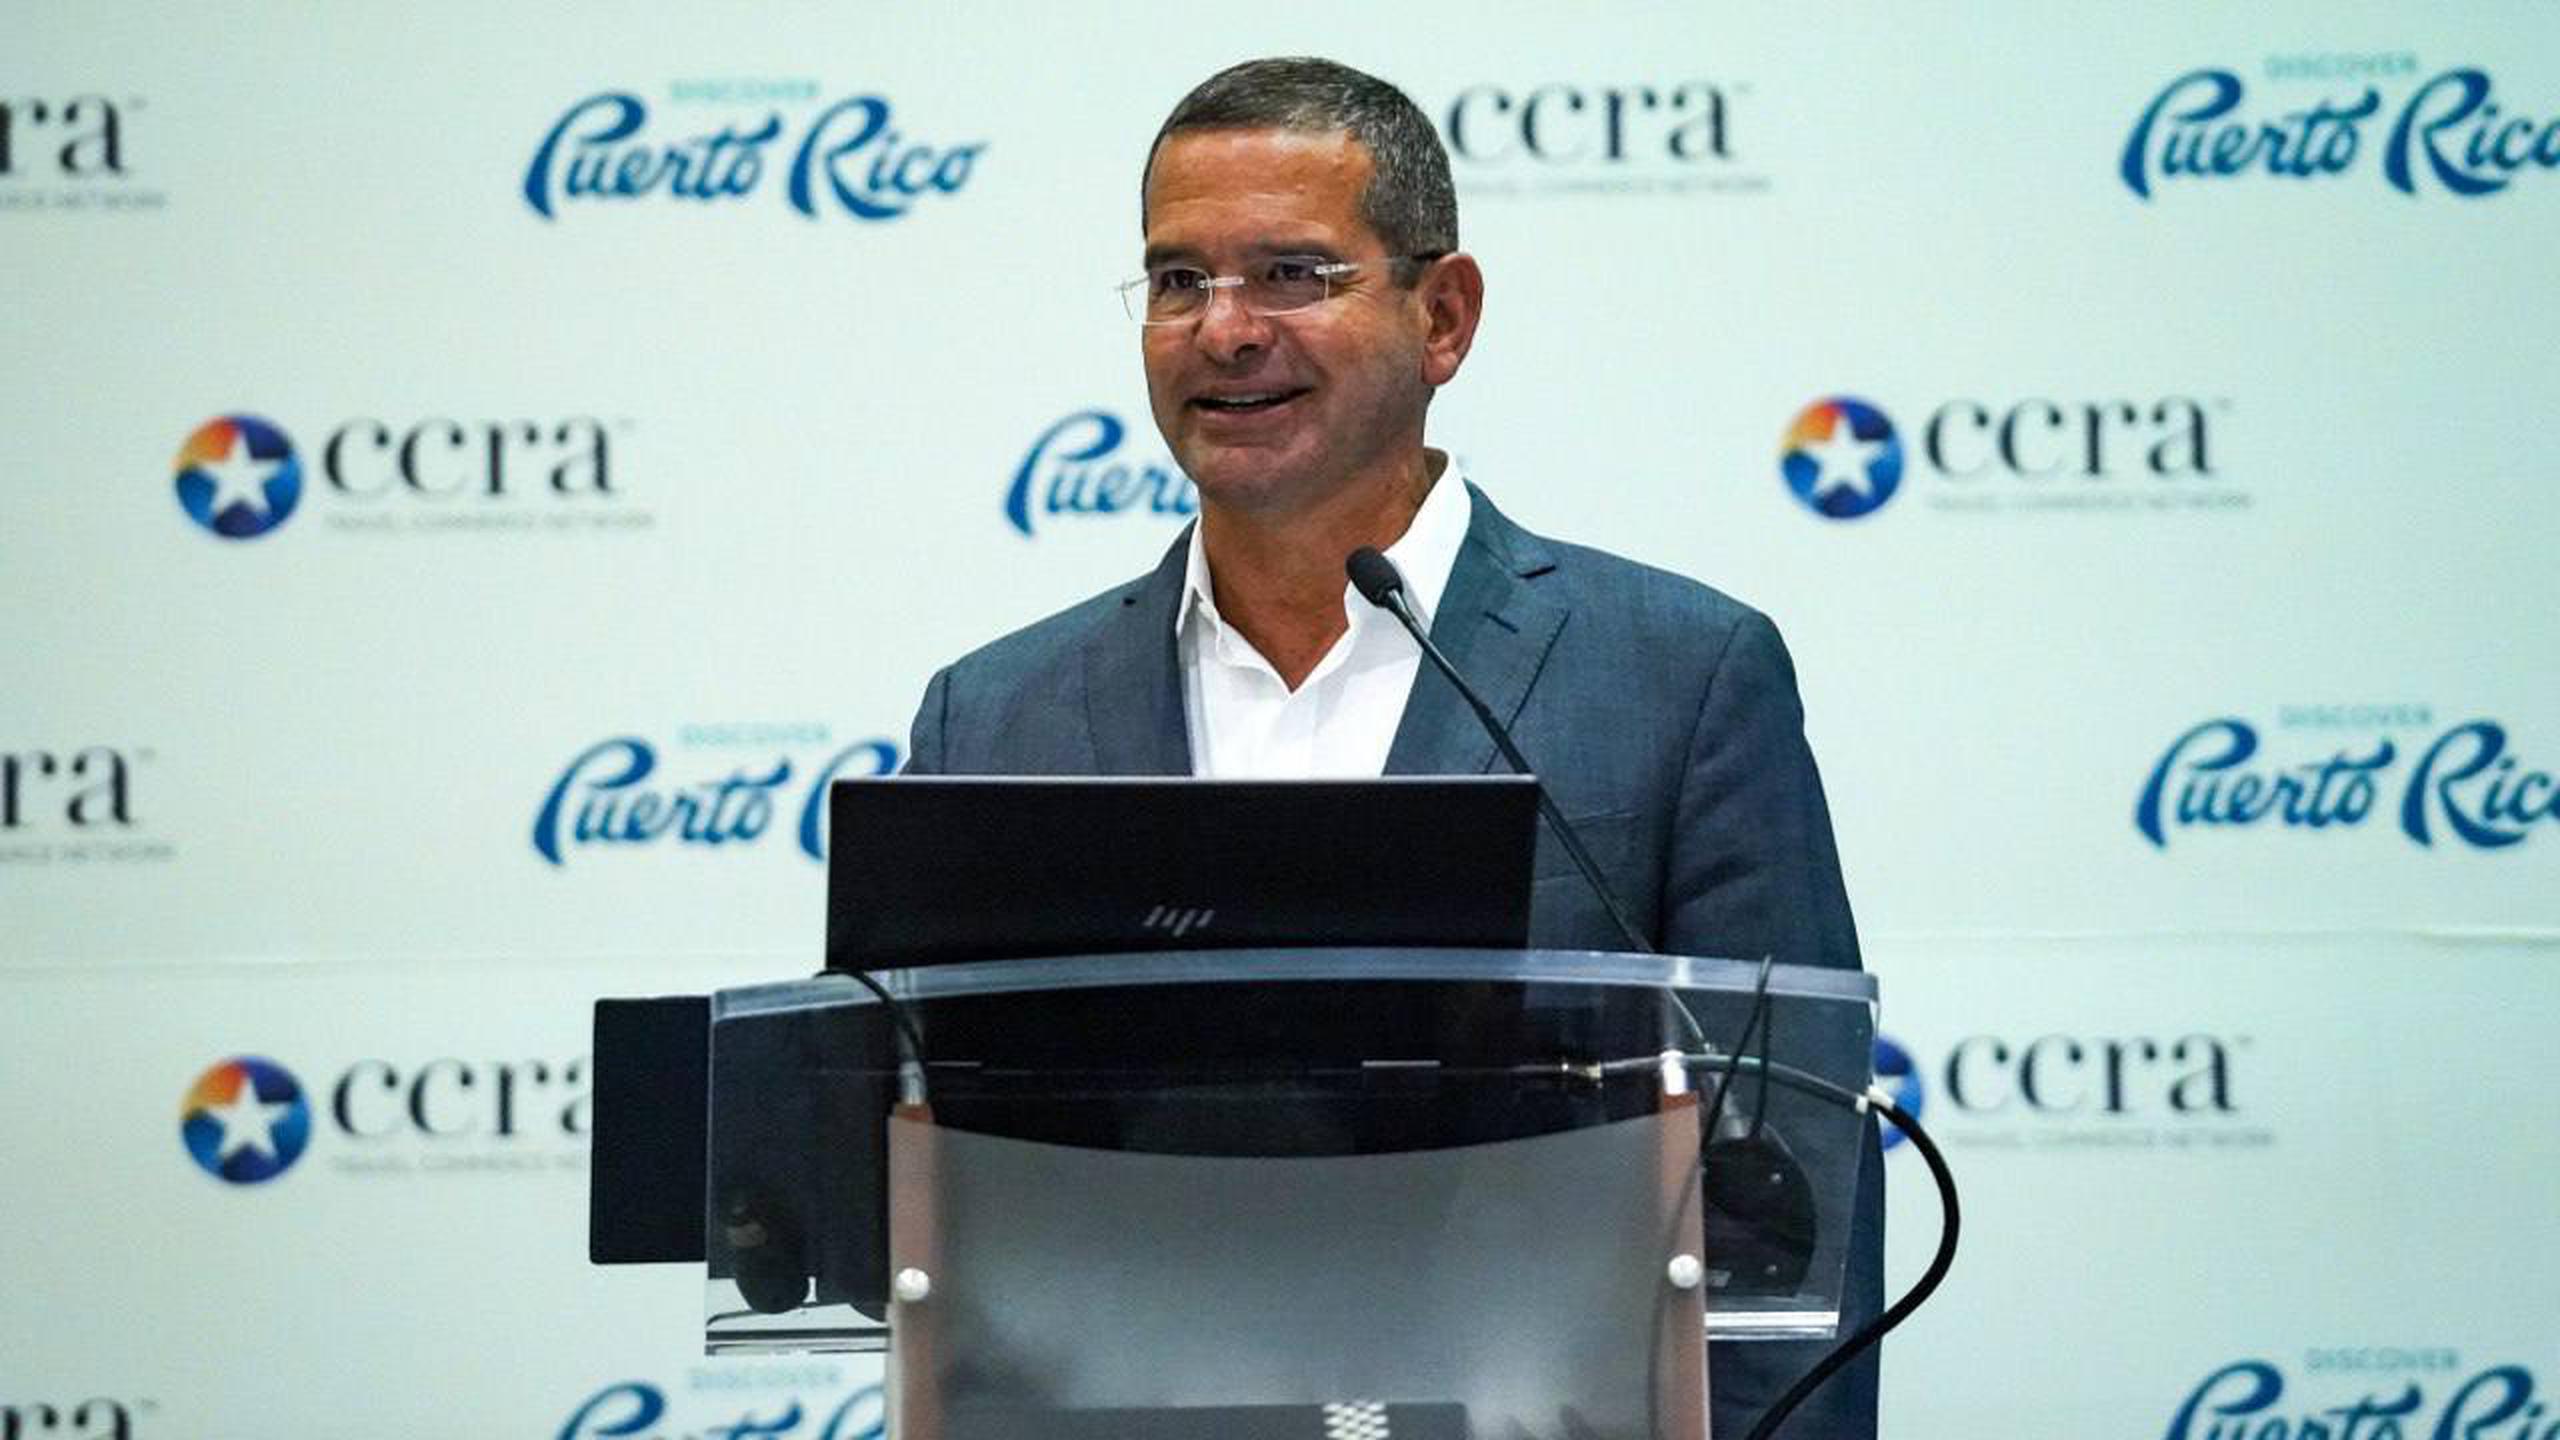 El gobernador Pedro Pierluisi presenta récords turísticos en evento internacional de agencias de viajes. (Foto: la Fortaleza)